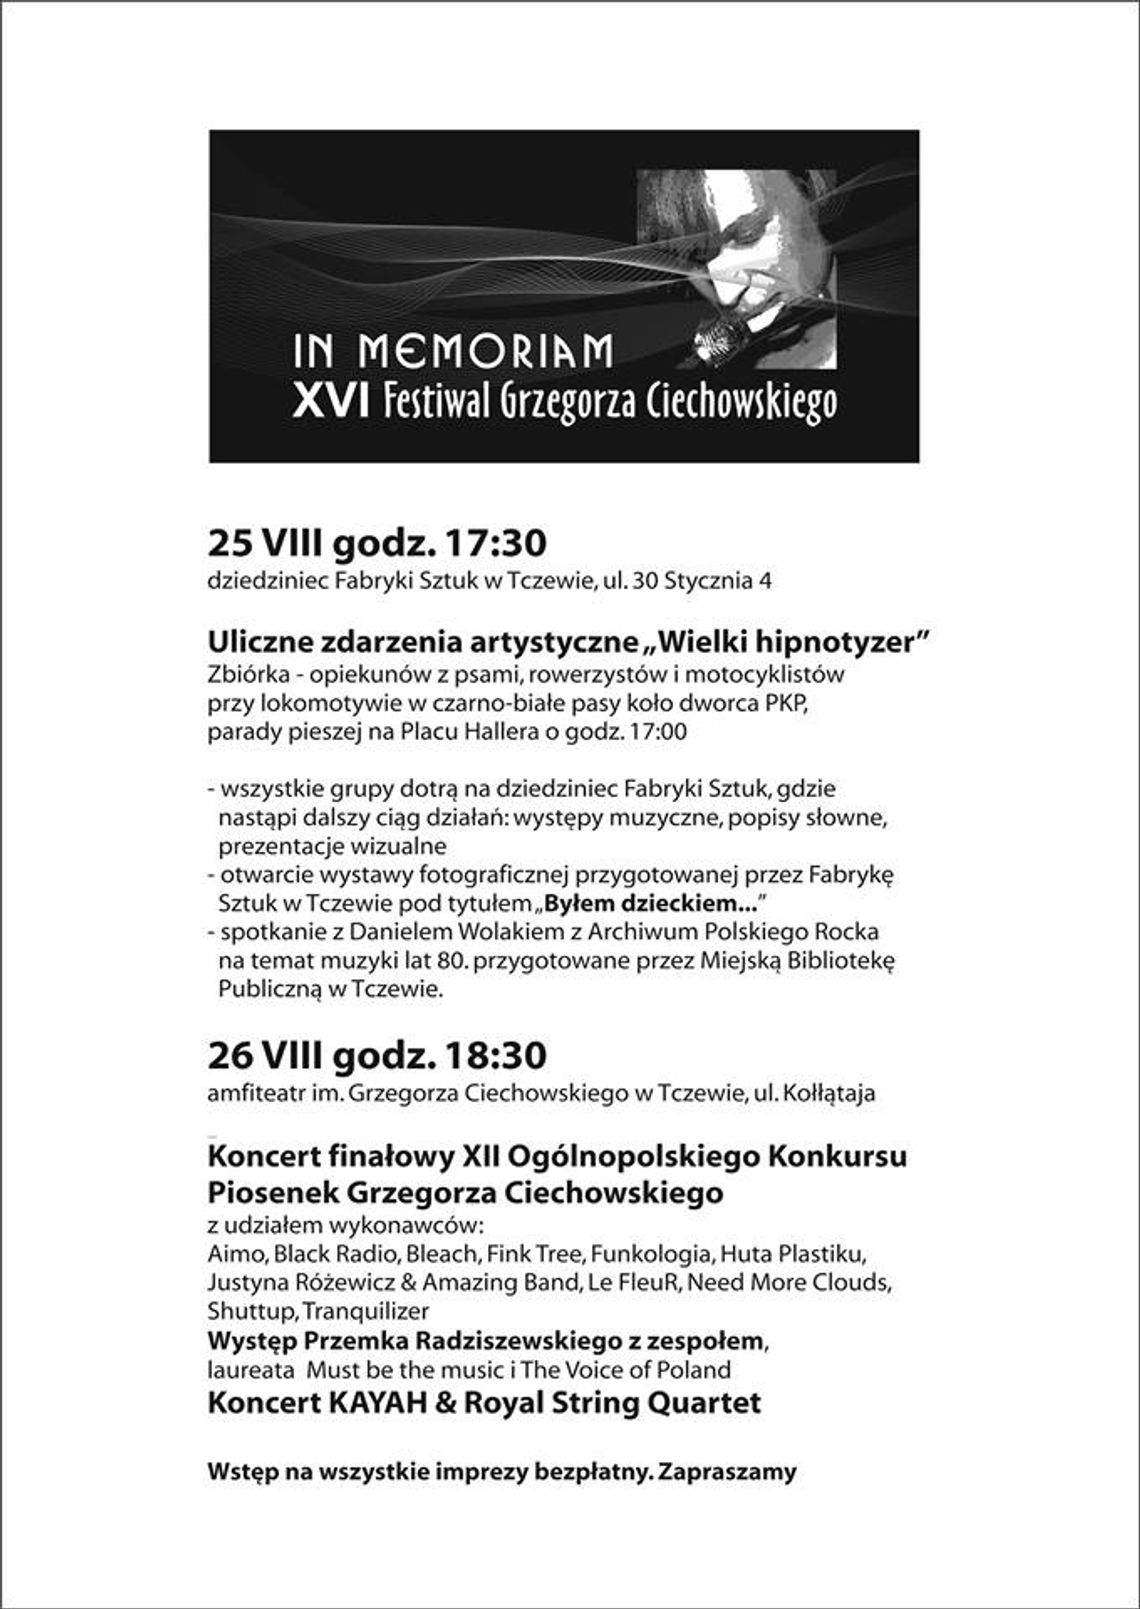 Festiwal Grzegorza Ciechowskiego In Memoriam 2017